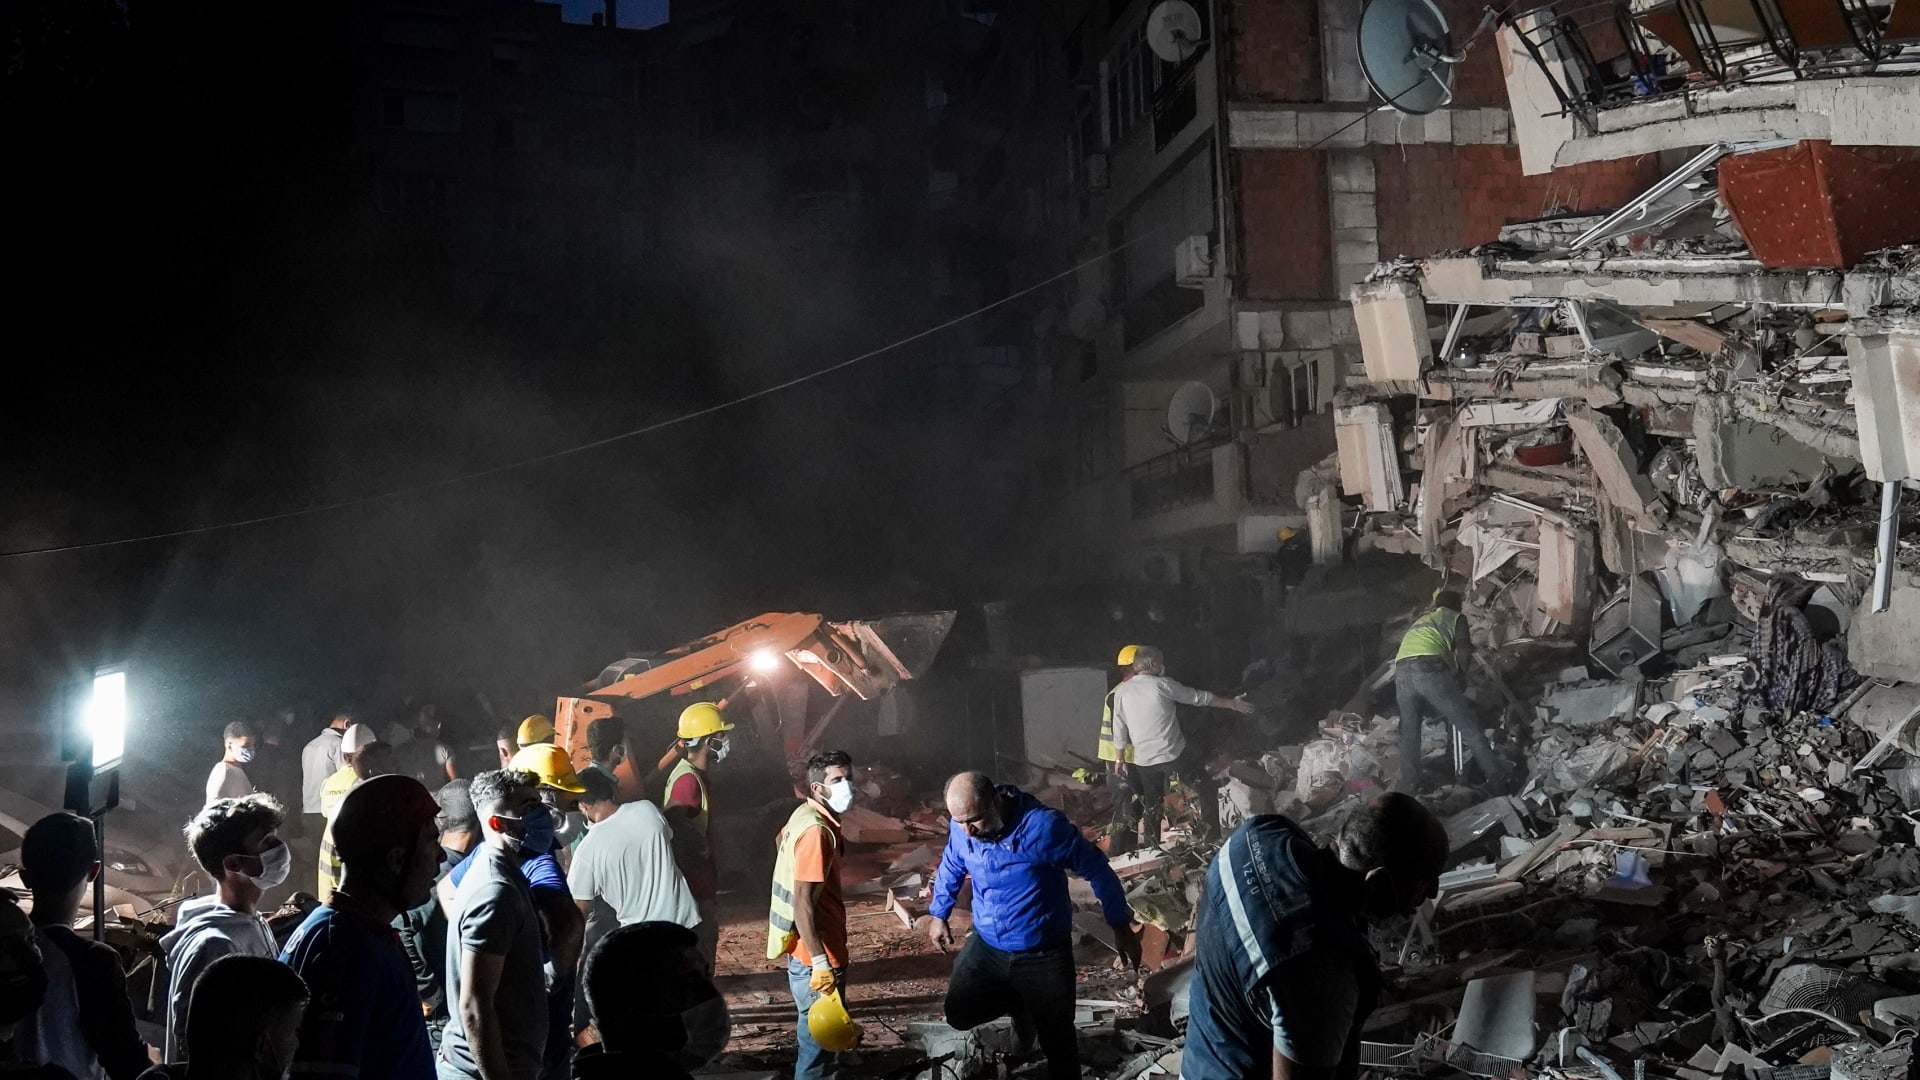 شاهد لحظة انهيار مبانِ.. وتسونامي يغرق منازل بعد زلزال تركيا واليونان